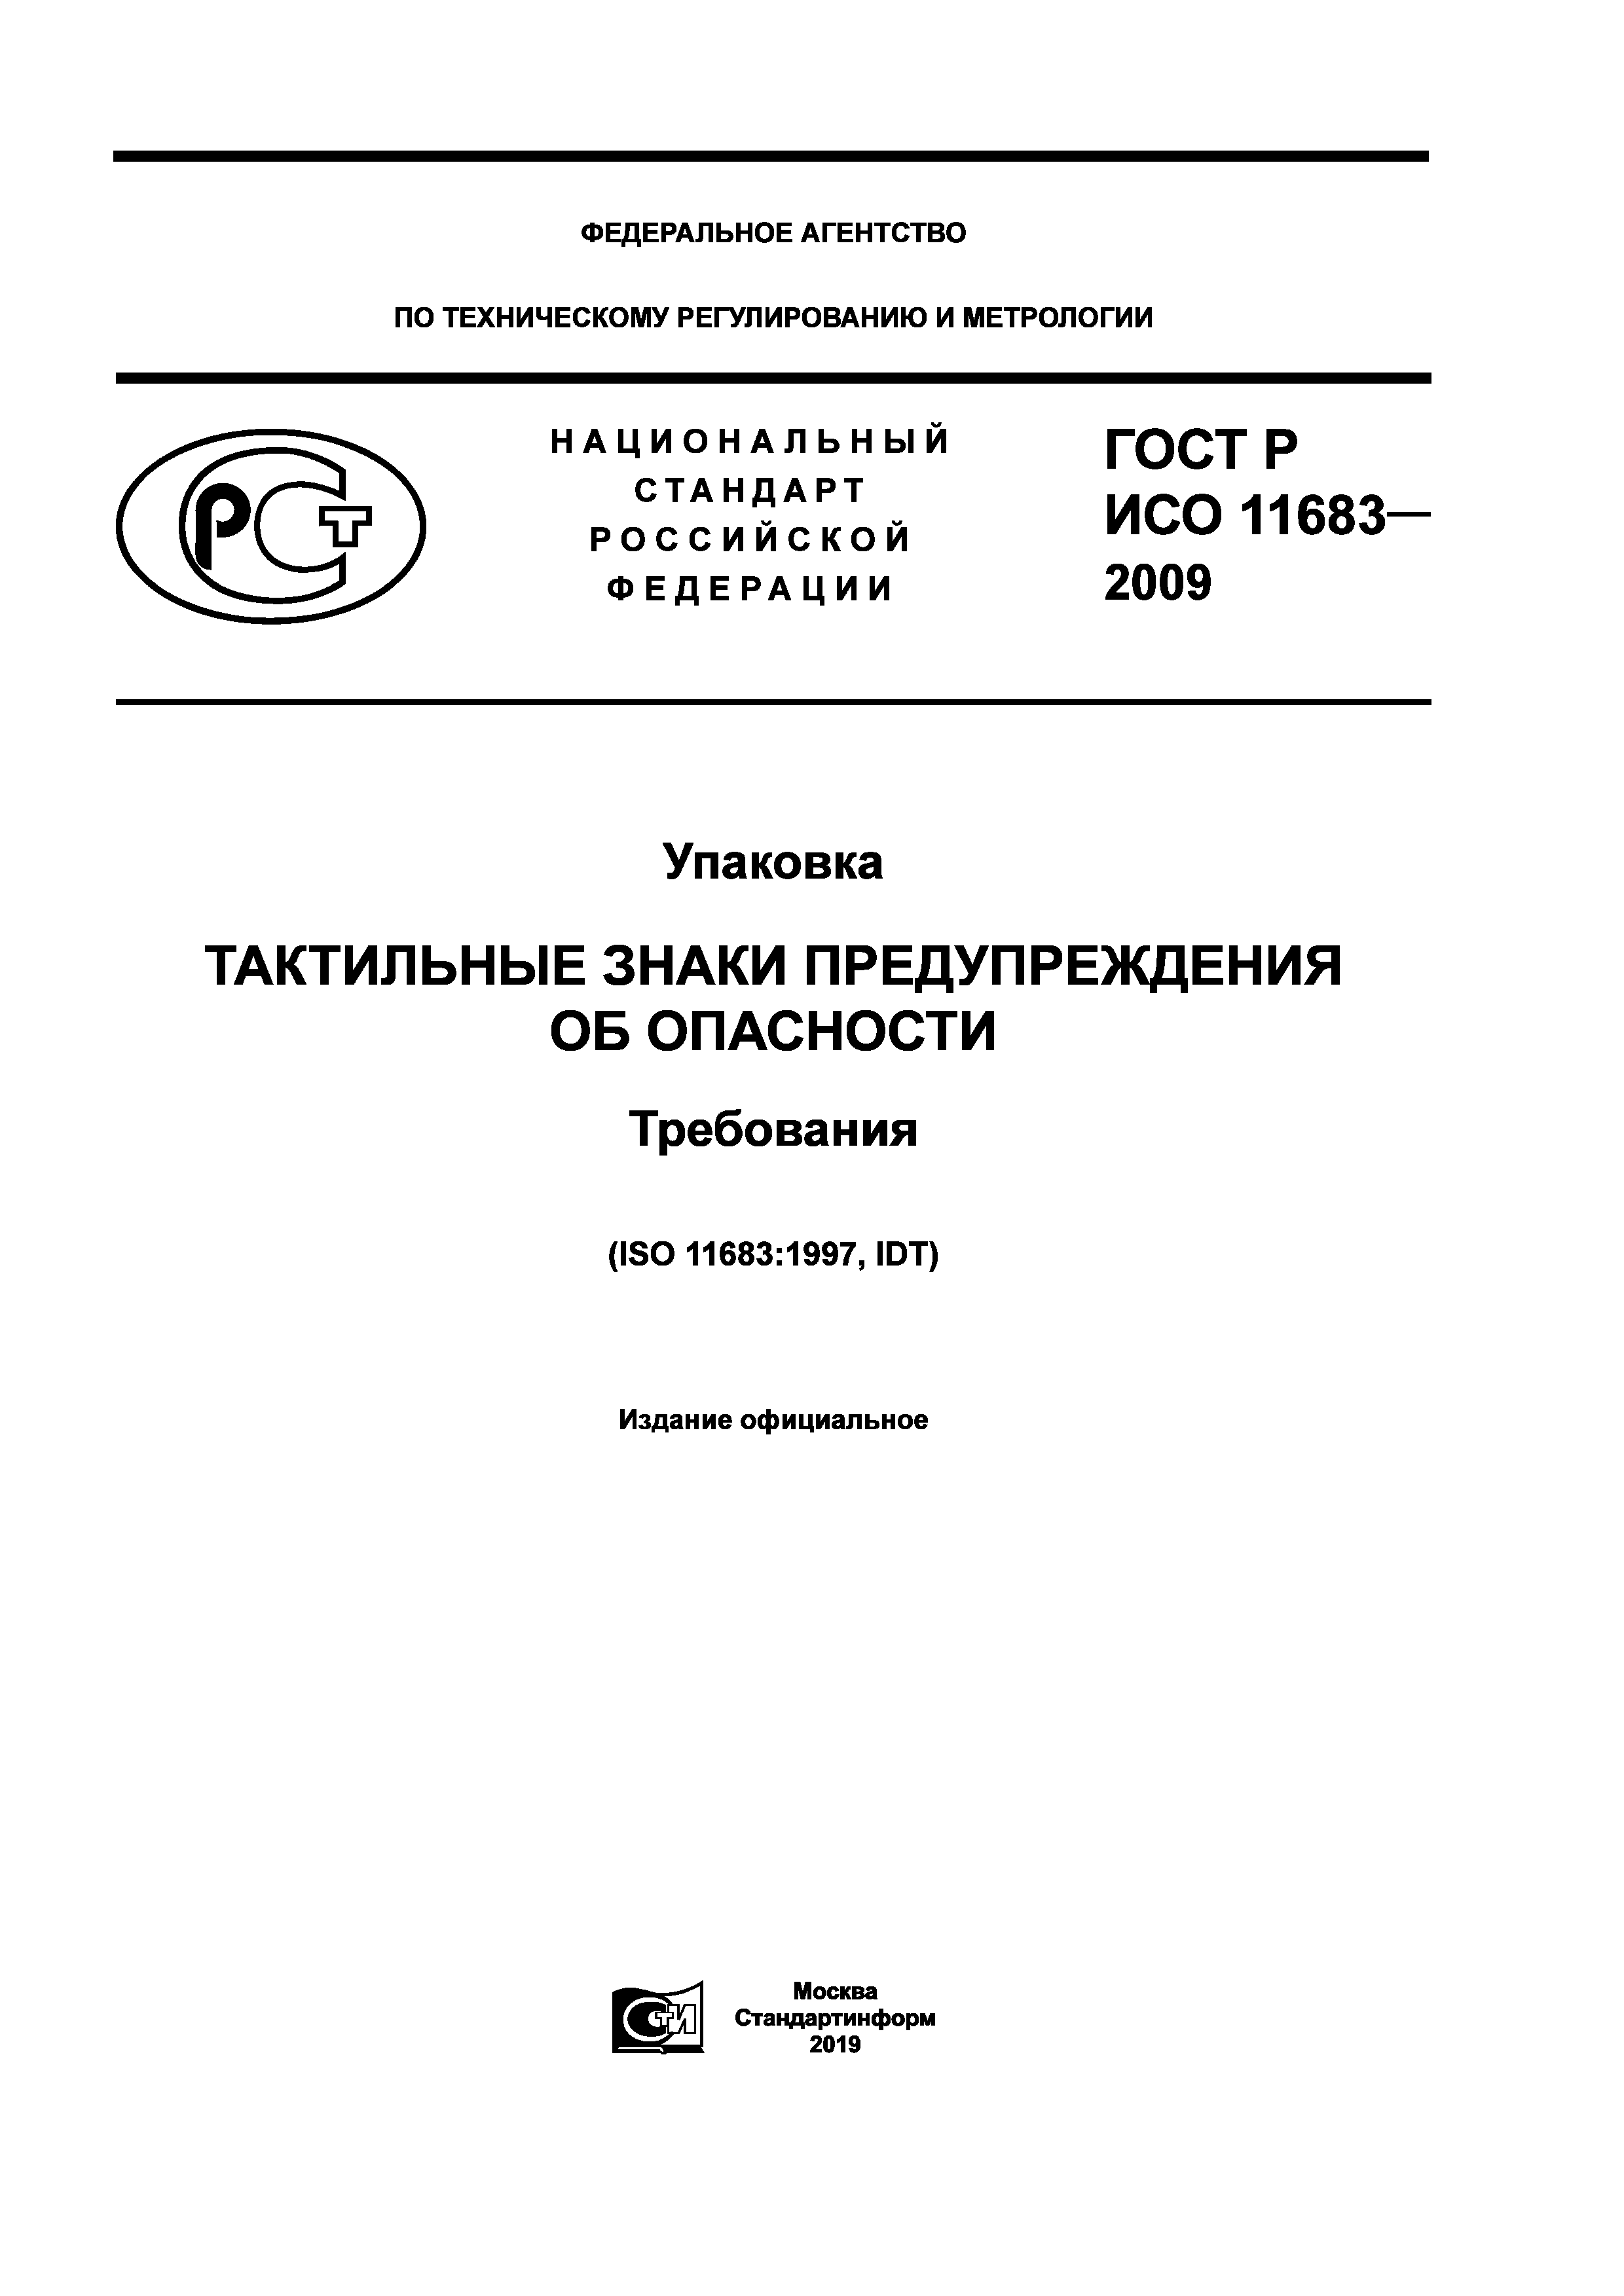 ГОСТ Р ИСО 11683-2009